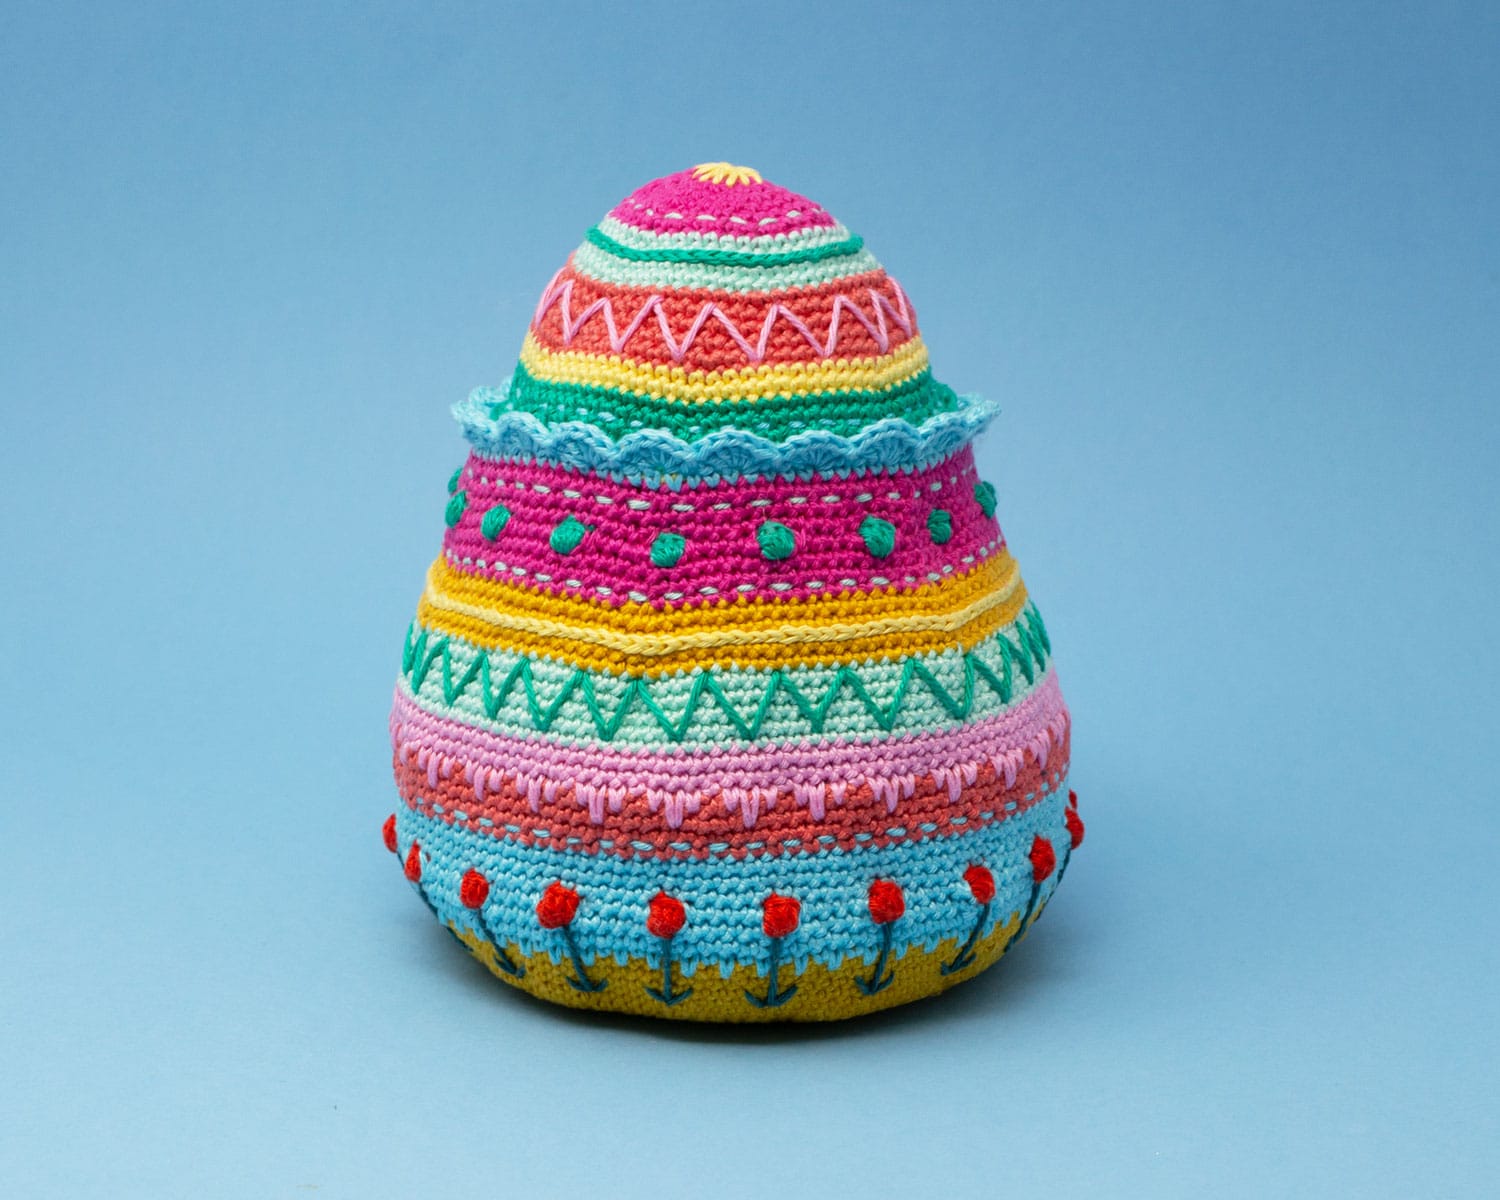 The Egg Crochet Pattern